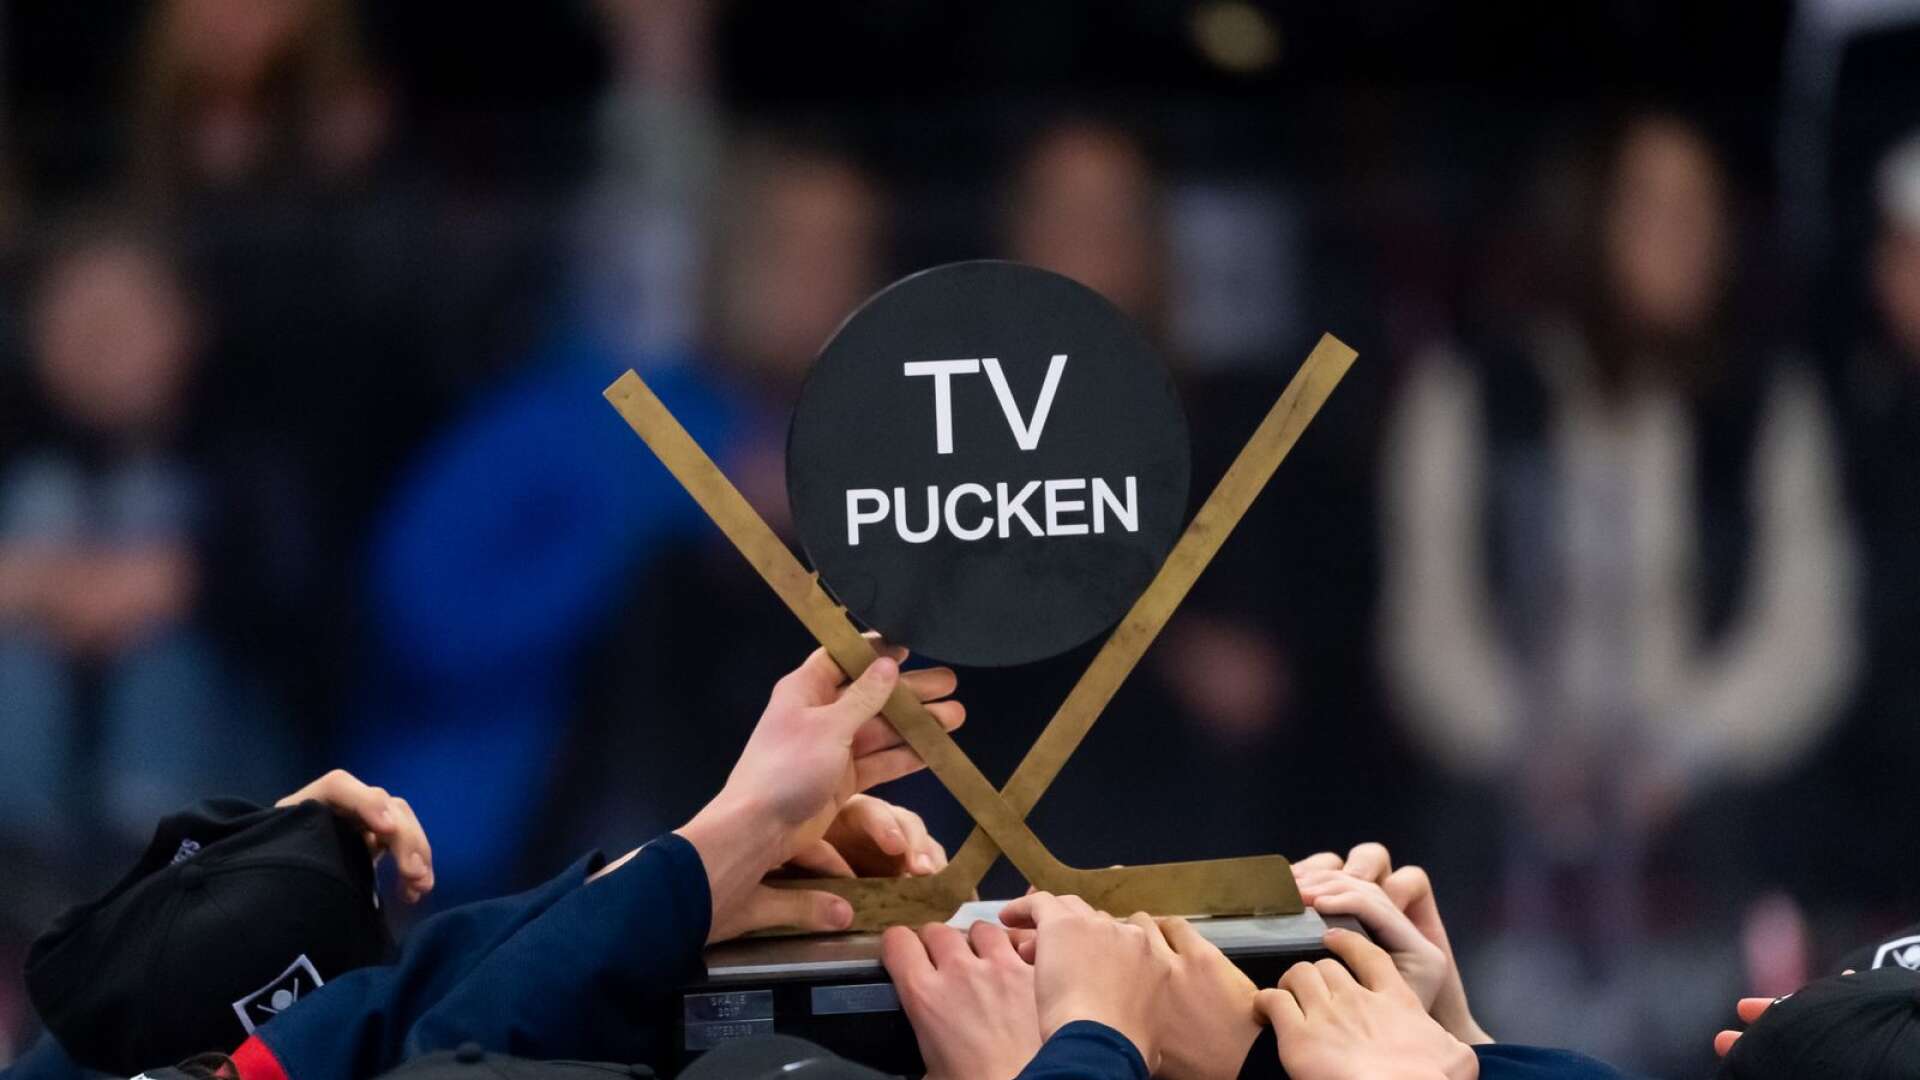 Värmlands flicklag är klart för kvartsfinal i TV-pucken.